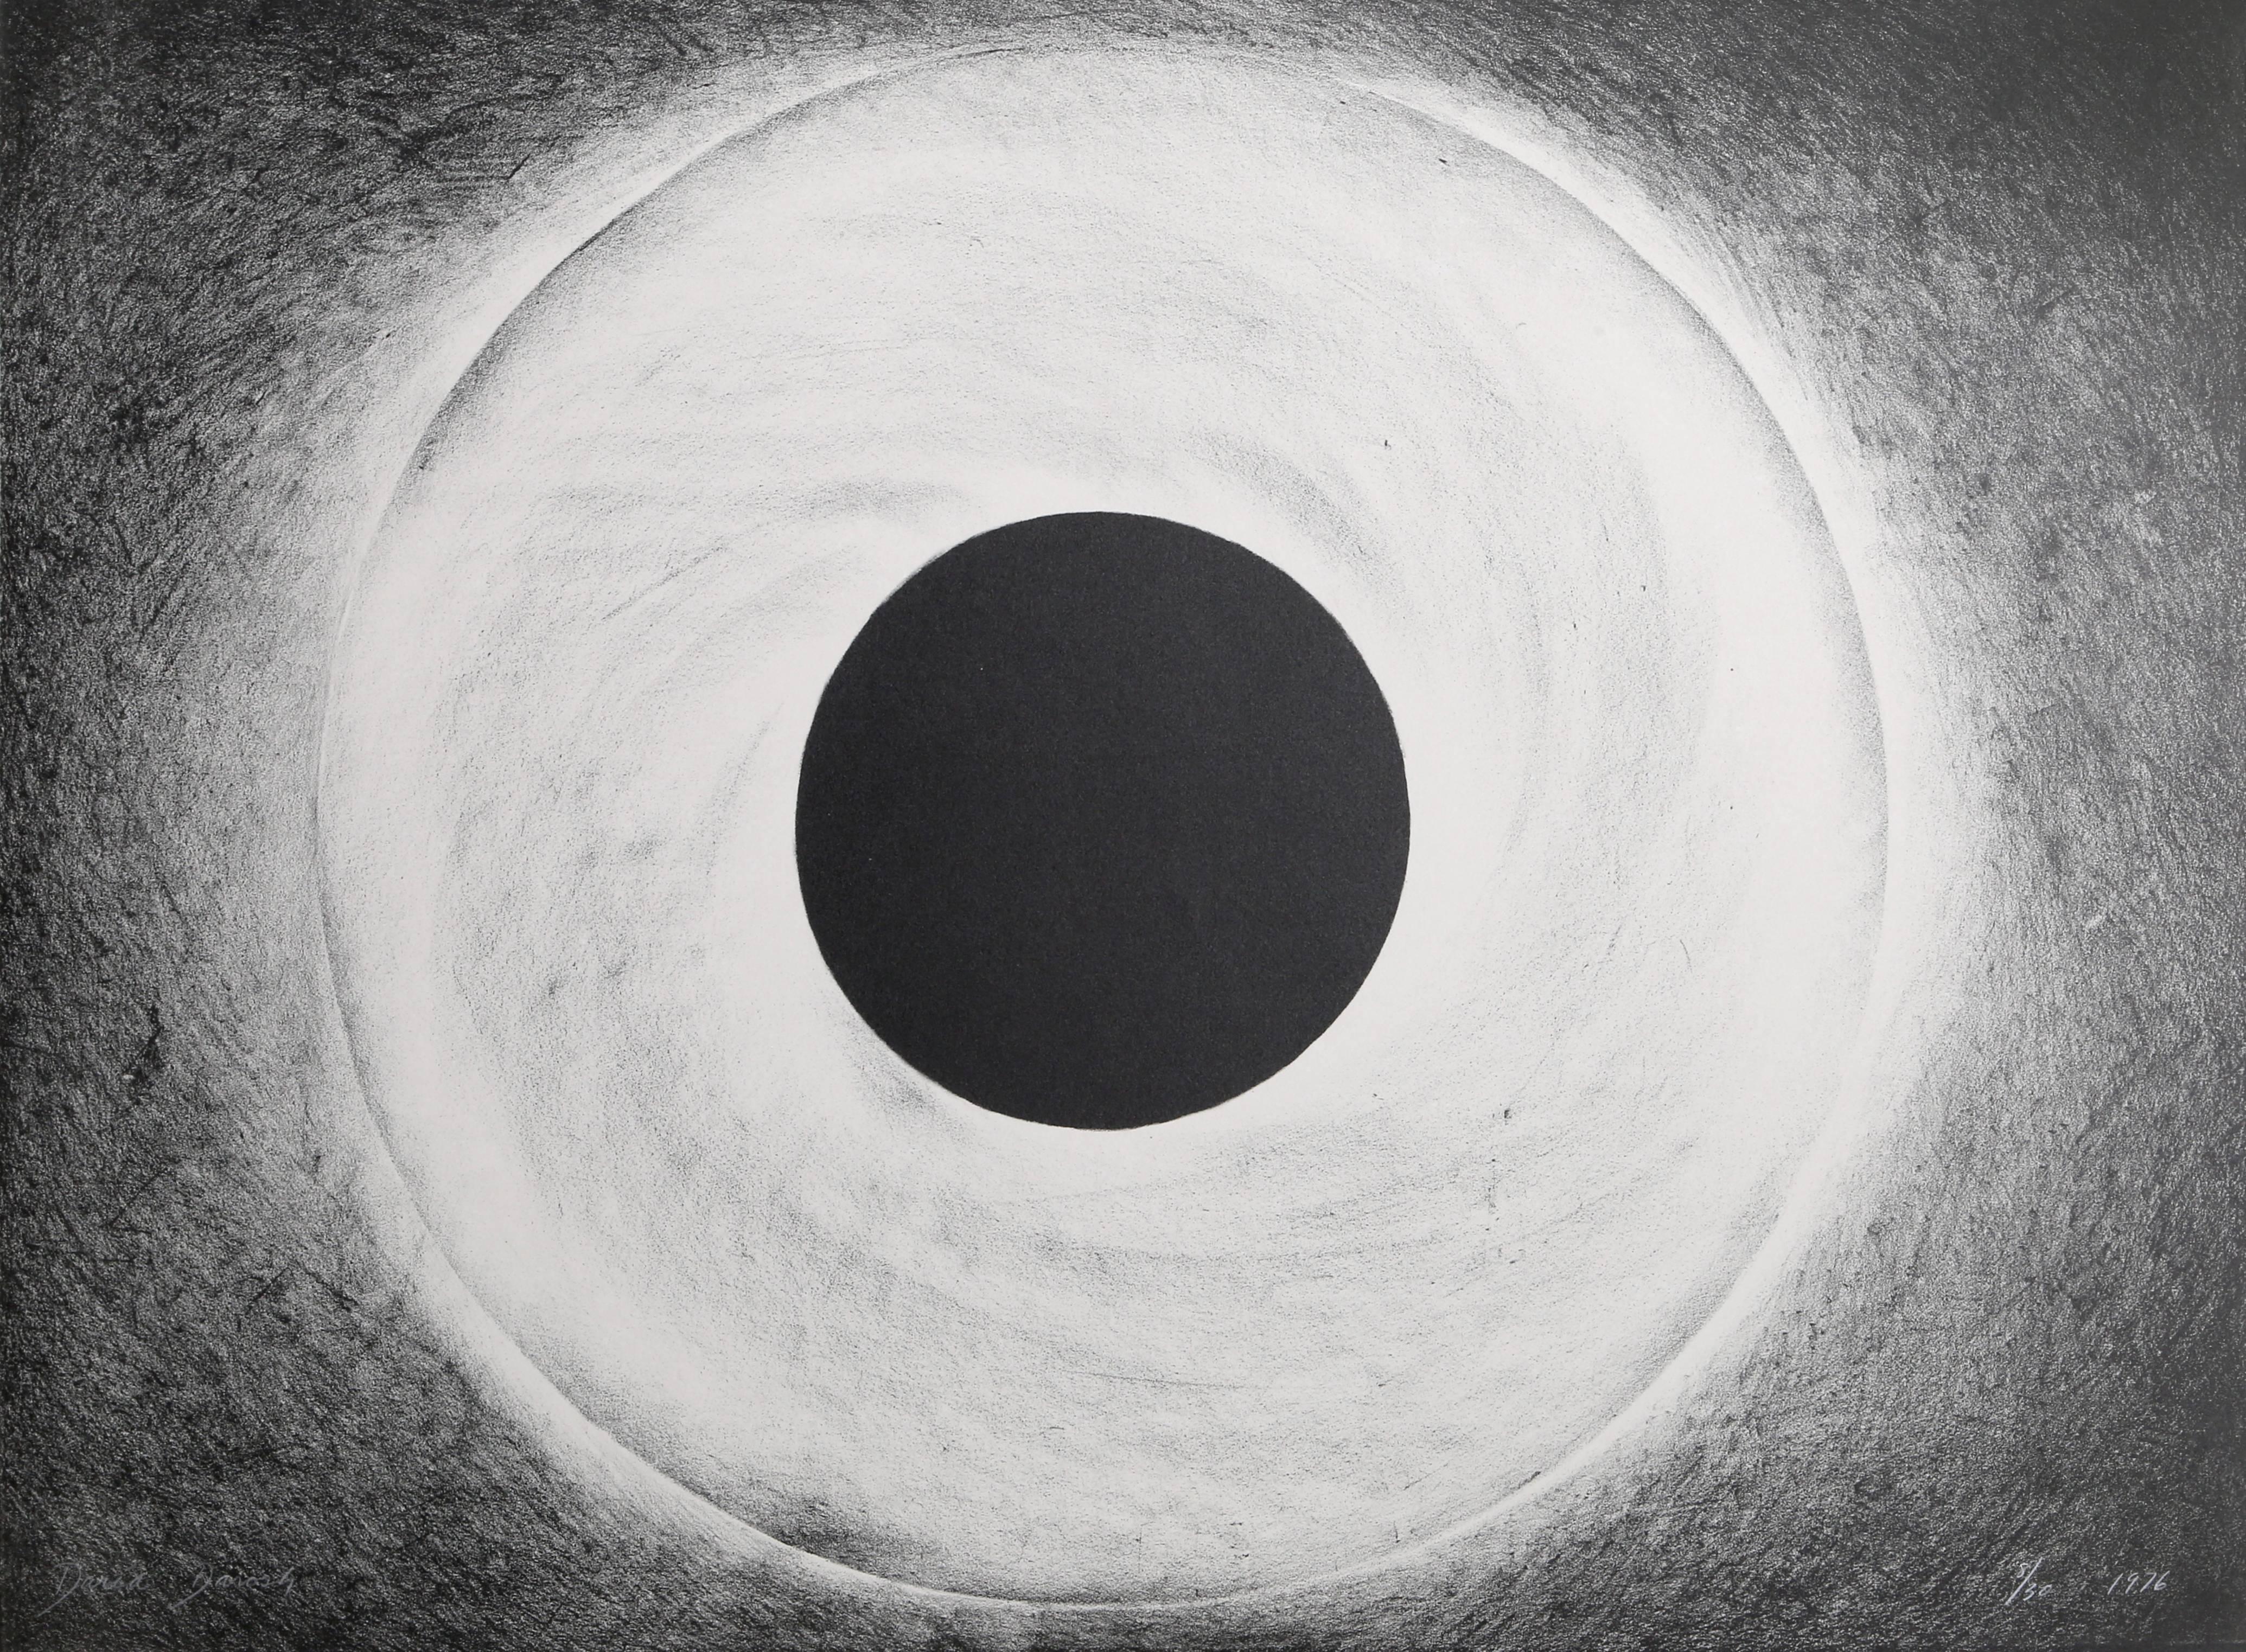 Künstlerin: Daria Dorosh
Titel: Ohne Titel - Auge aus dem A.I.R. Women's Portfolio   
Jahr: 1976
Medium:  Radierung, mit Bleistift signiert und nummeriert
Ausgabe: 8/30
Papierformat:  22 x 30 Zoll